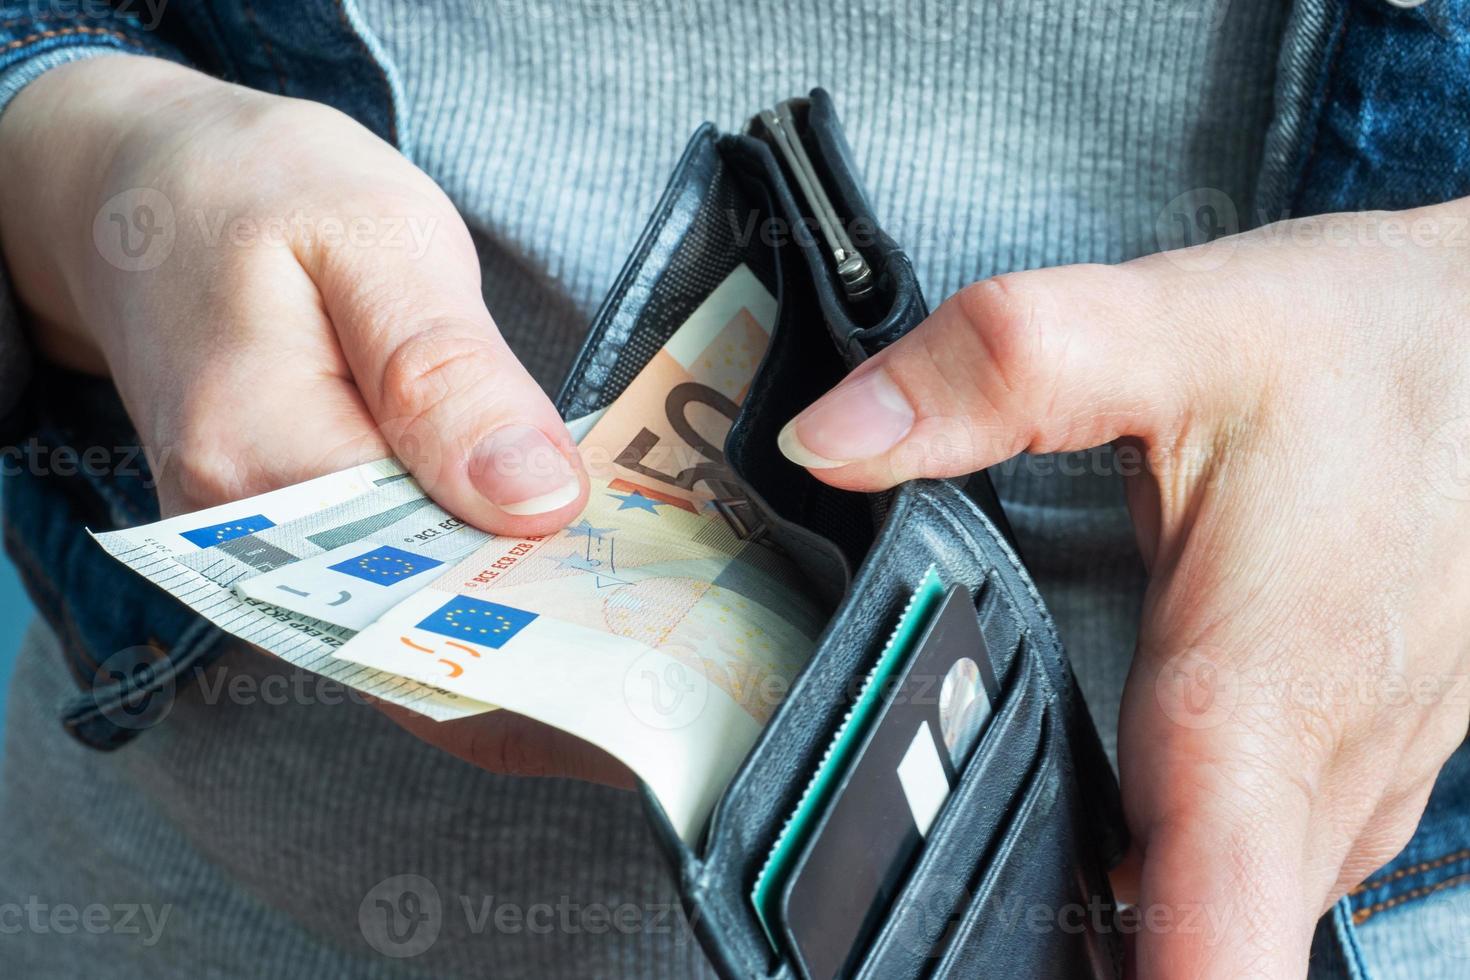 Pompeya Disparidad traductor las manos de las mujeres sacan dinero en euros de sus carteras. 8958884  Foto de stock en Vecteezy